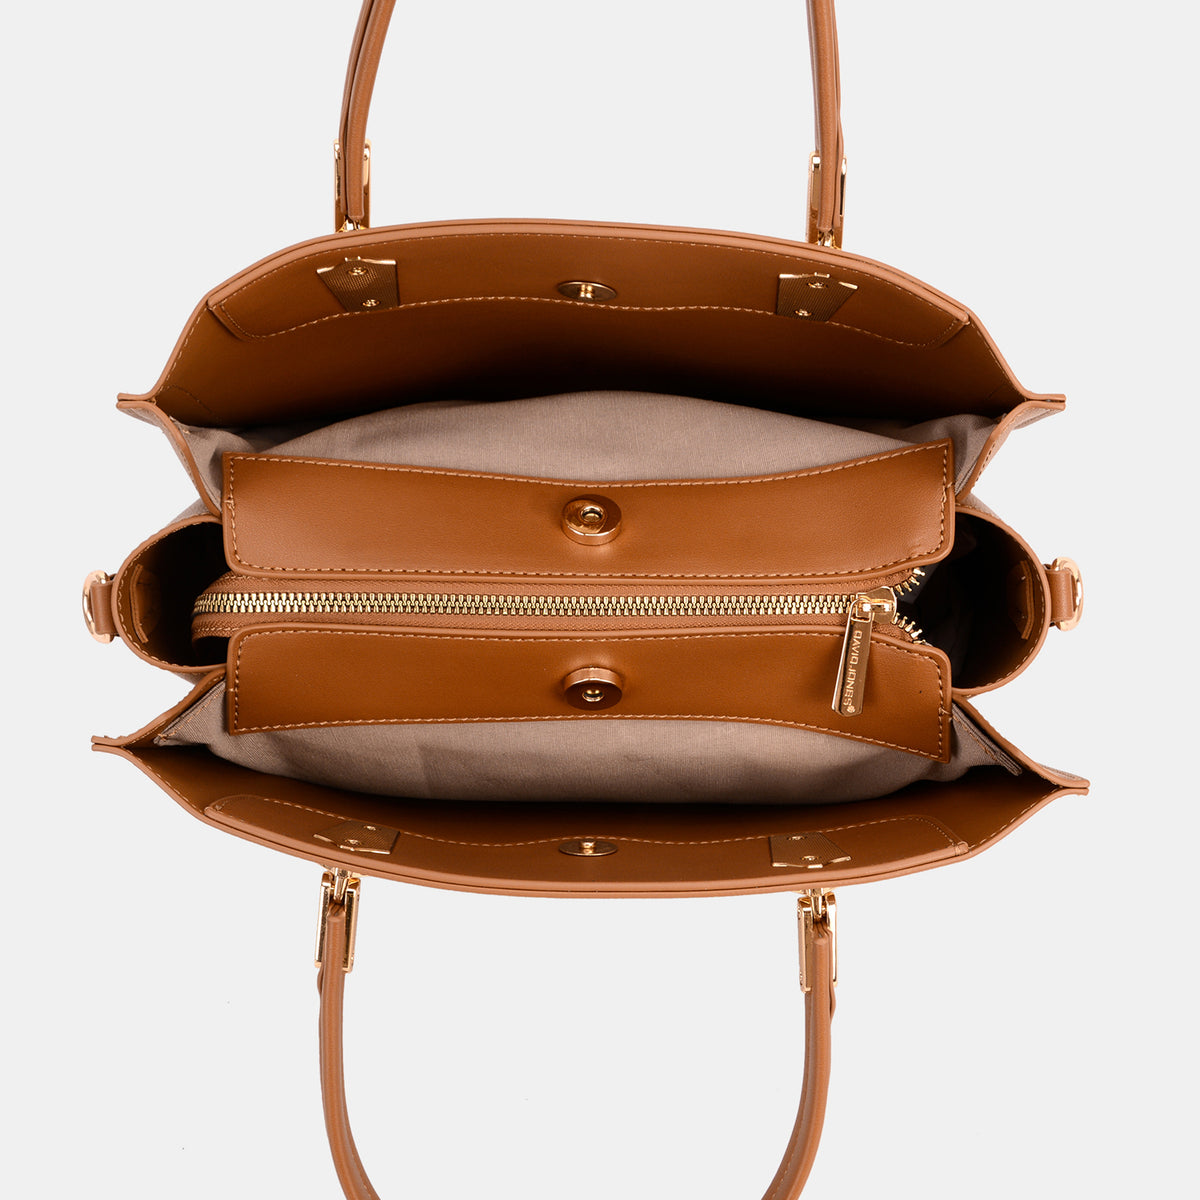 David Jones PU Leather Medium Handbag - Fashion BTQ -  - Fashion BTQ